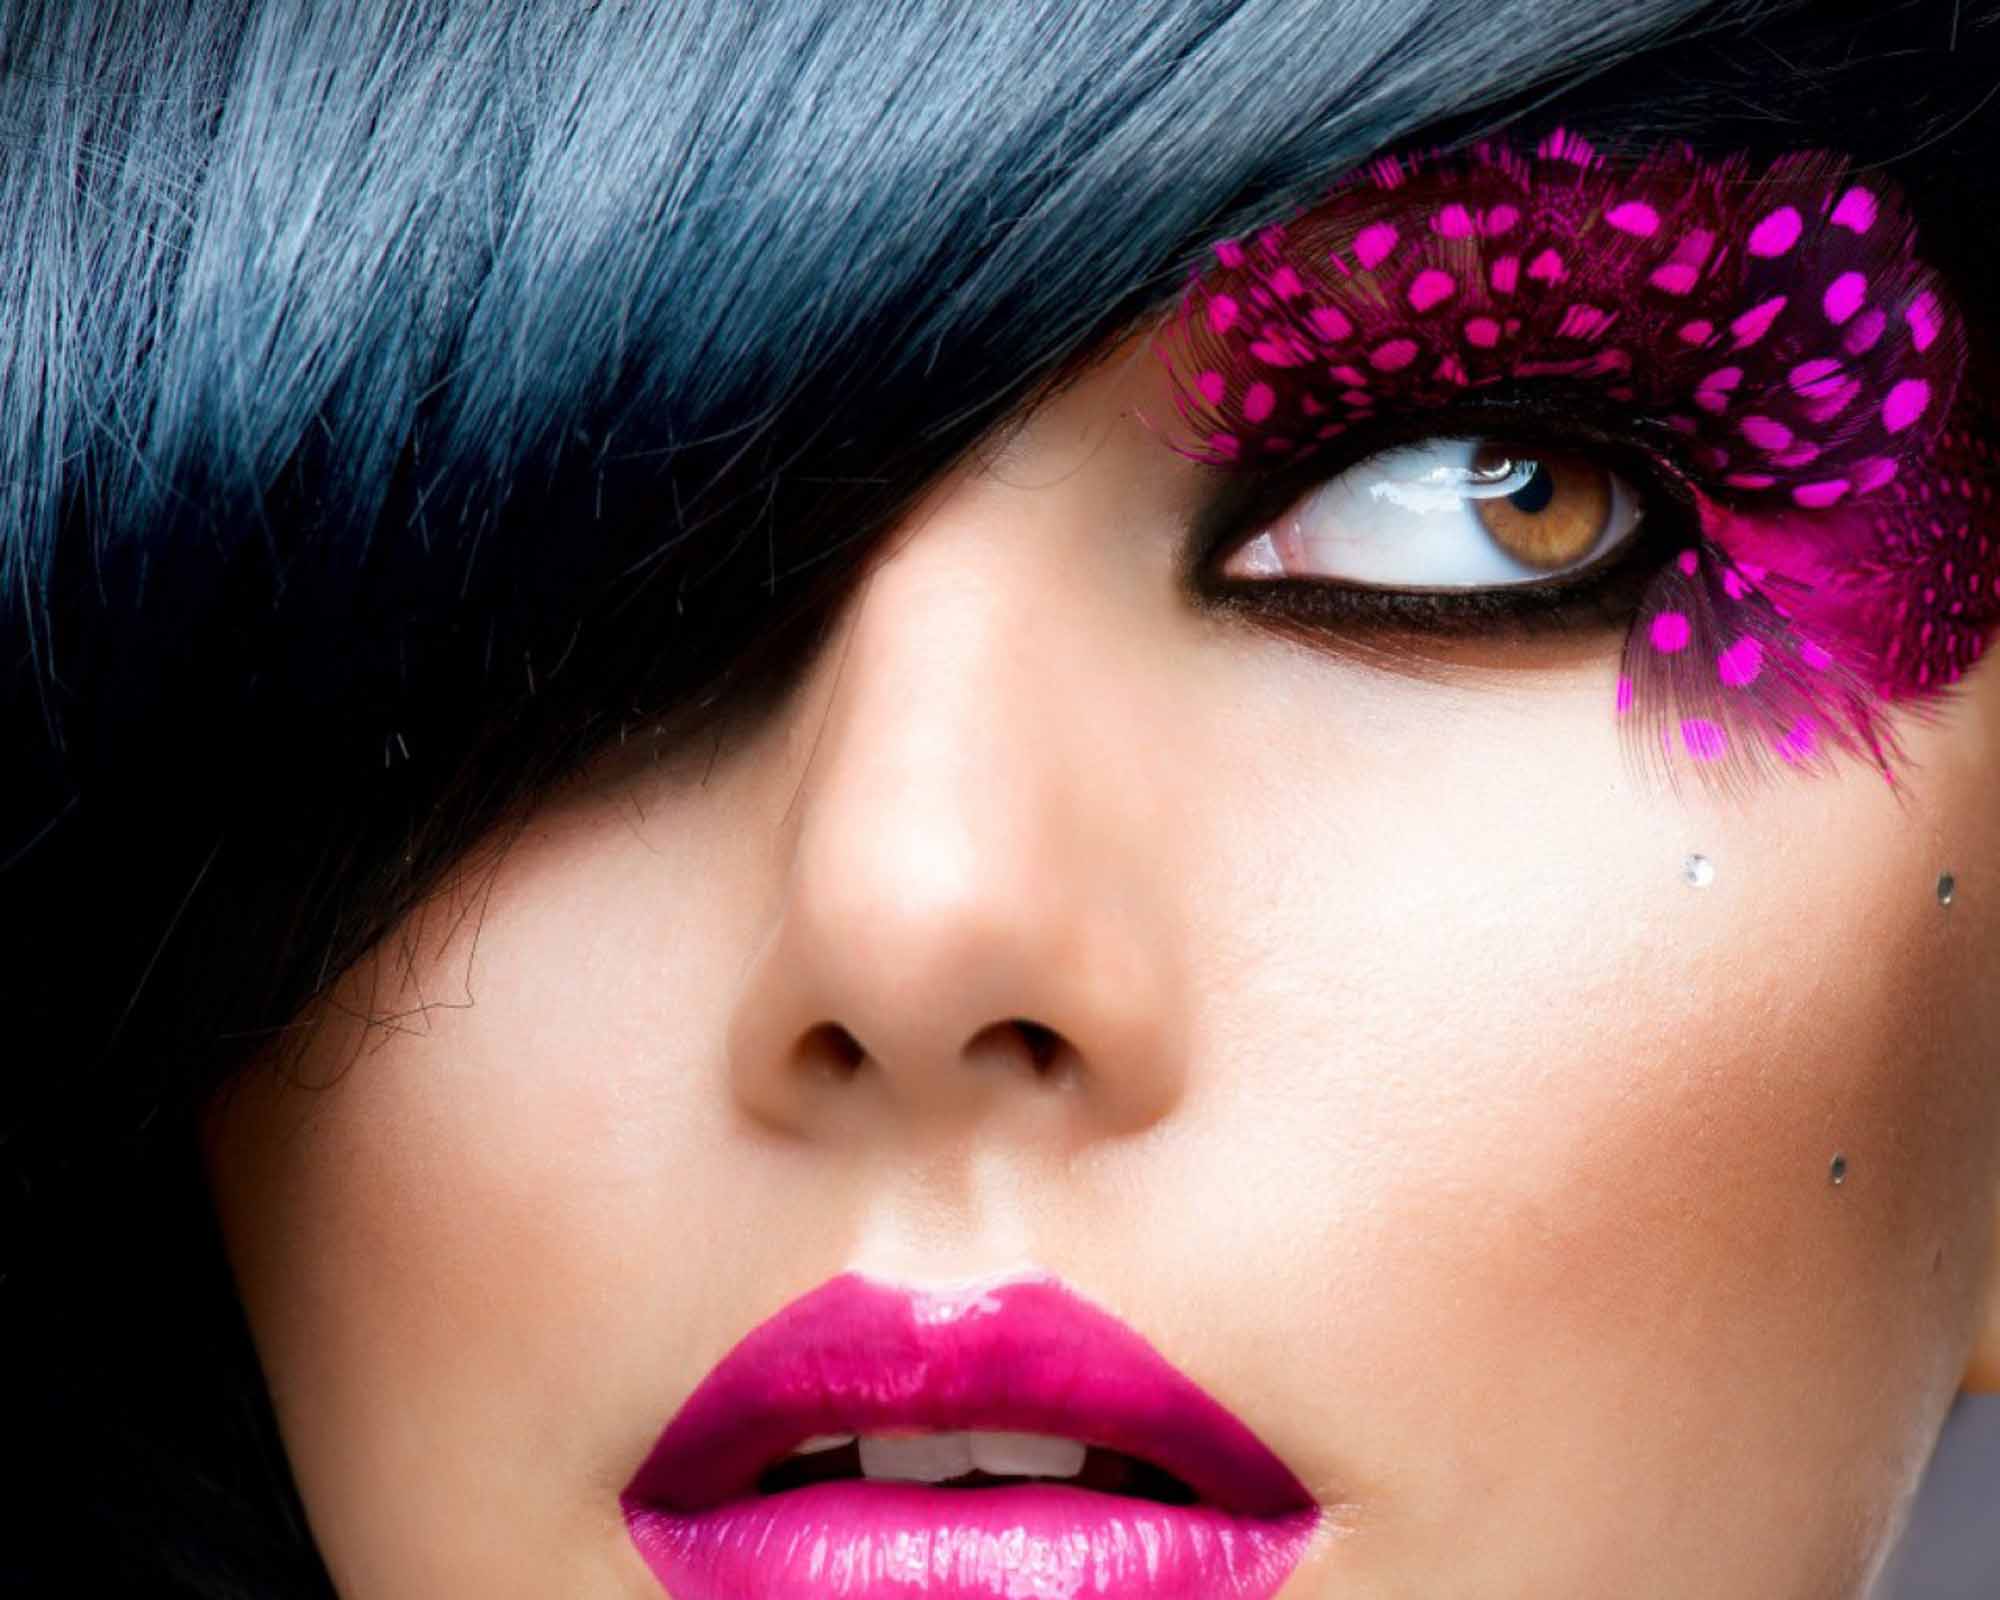 http://web-rockstars.com/bellezza/wp-content/uploads/2013/09/makeup001.jpg